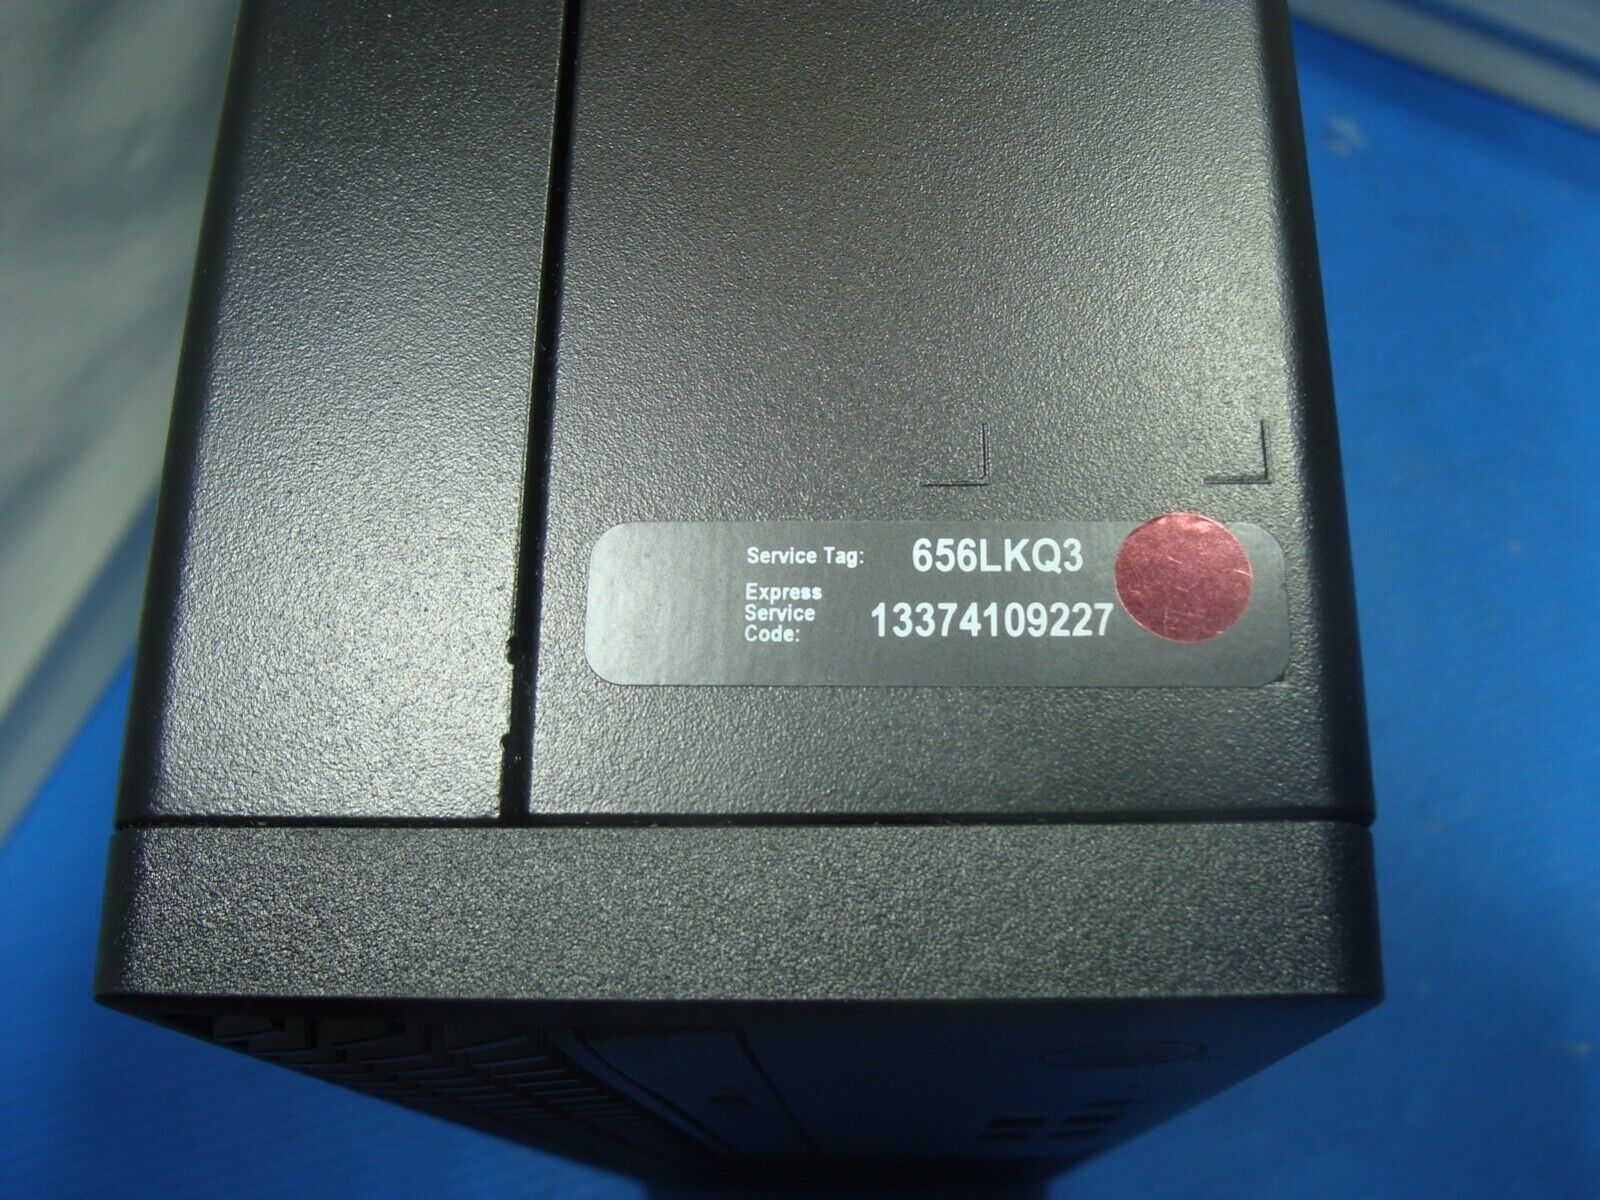 OB 2yr Warranty Dell Optiplex 3000 SFF i5-12500 3Ghz 6Core 8GB 256GB NVMe SSD